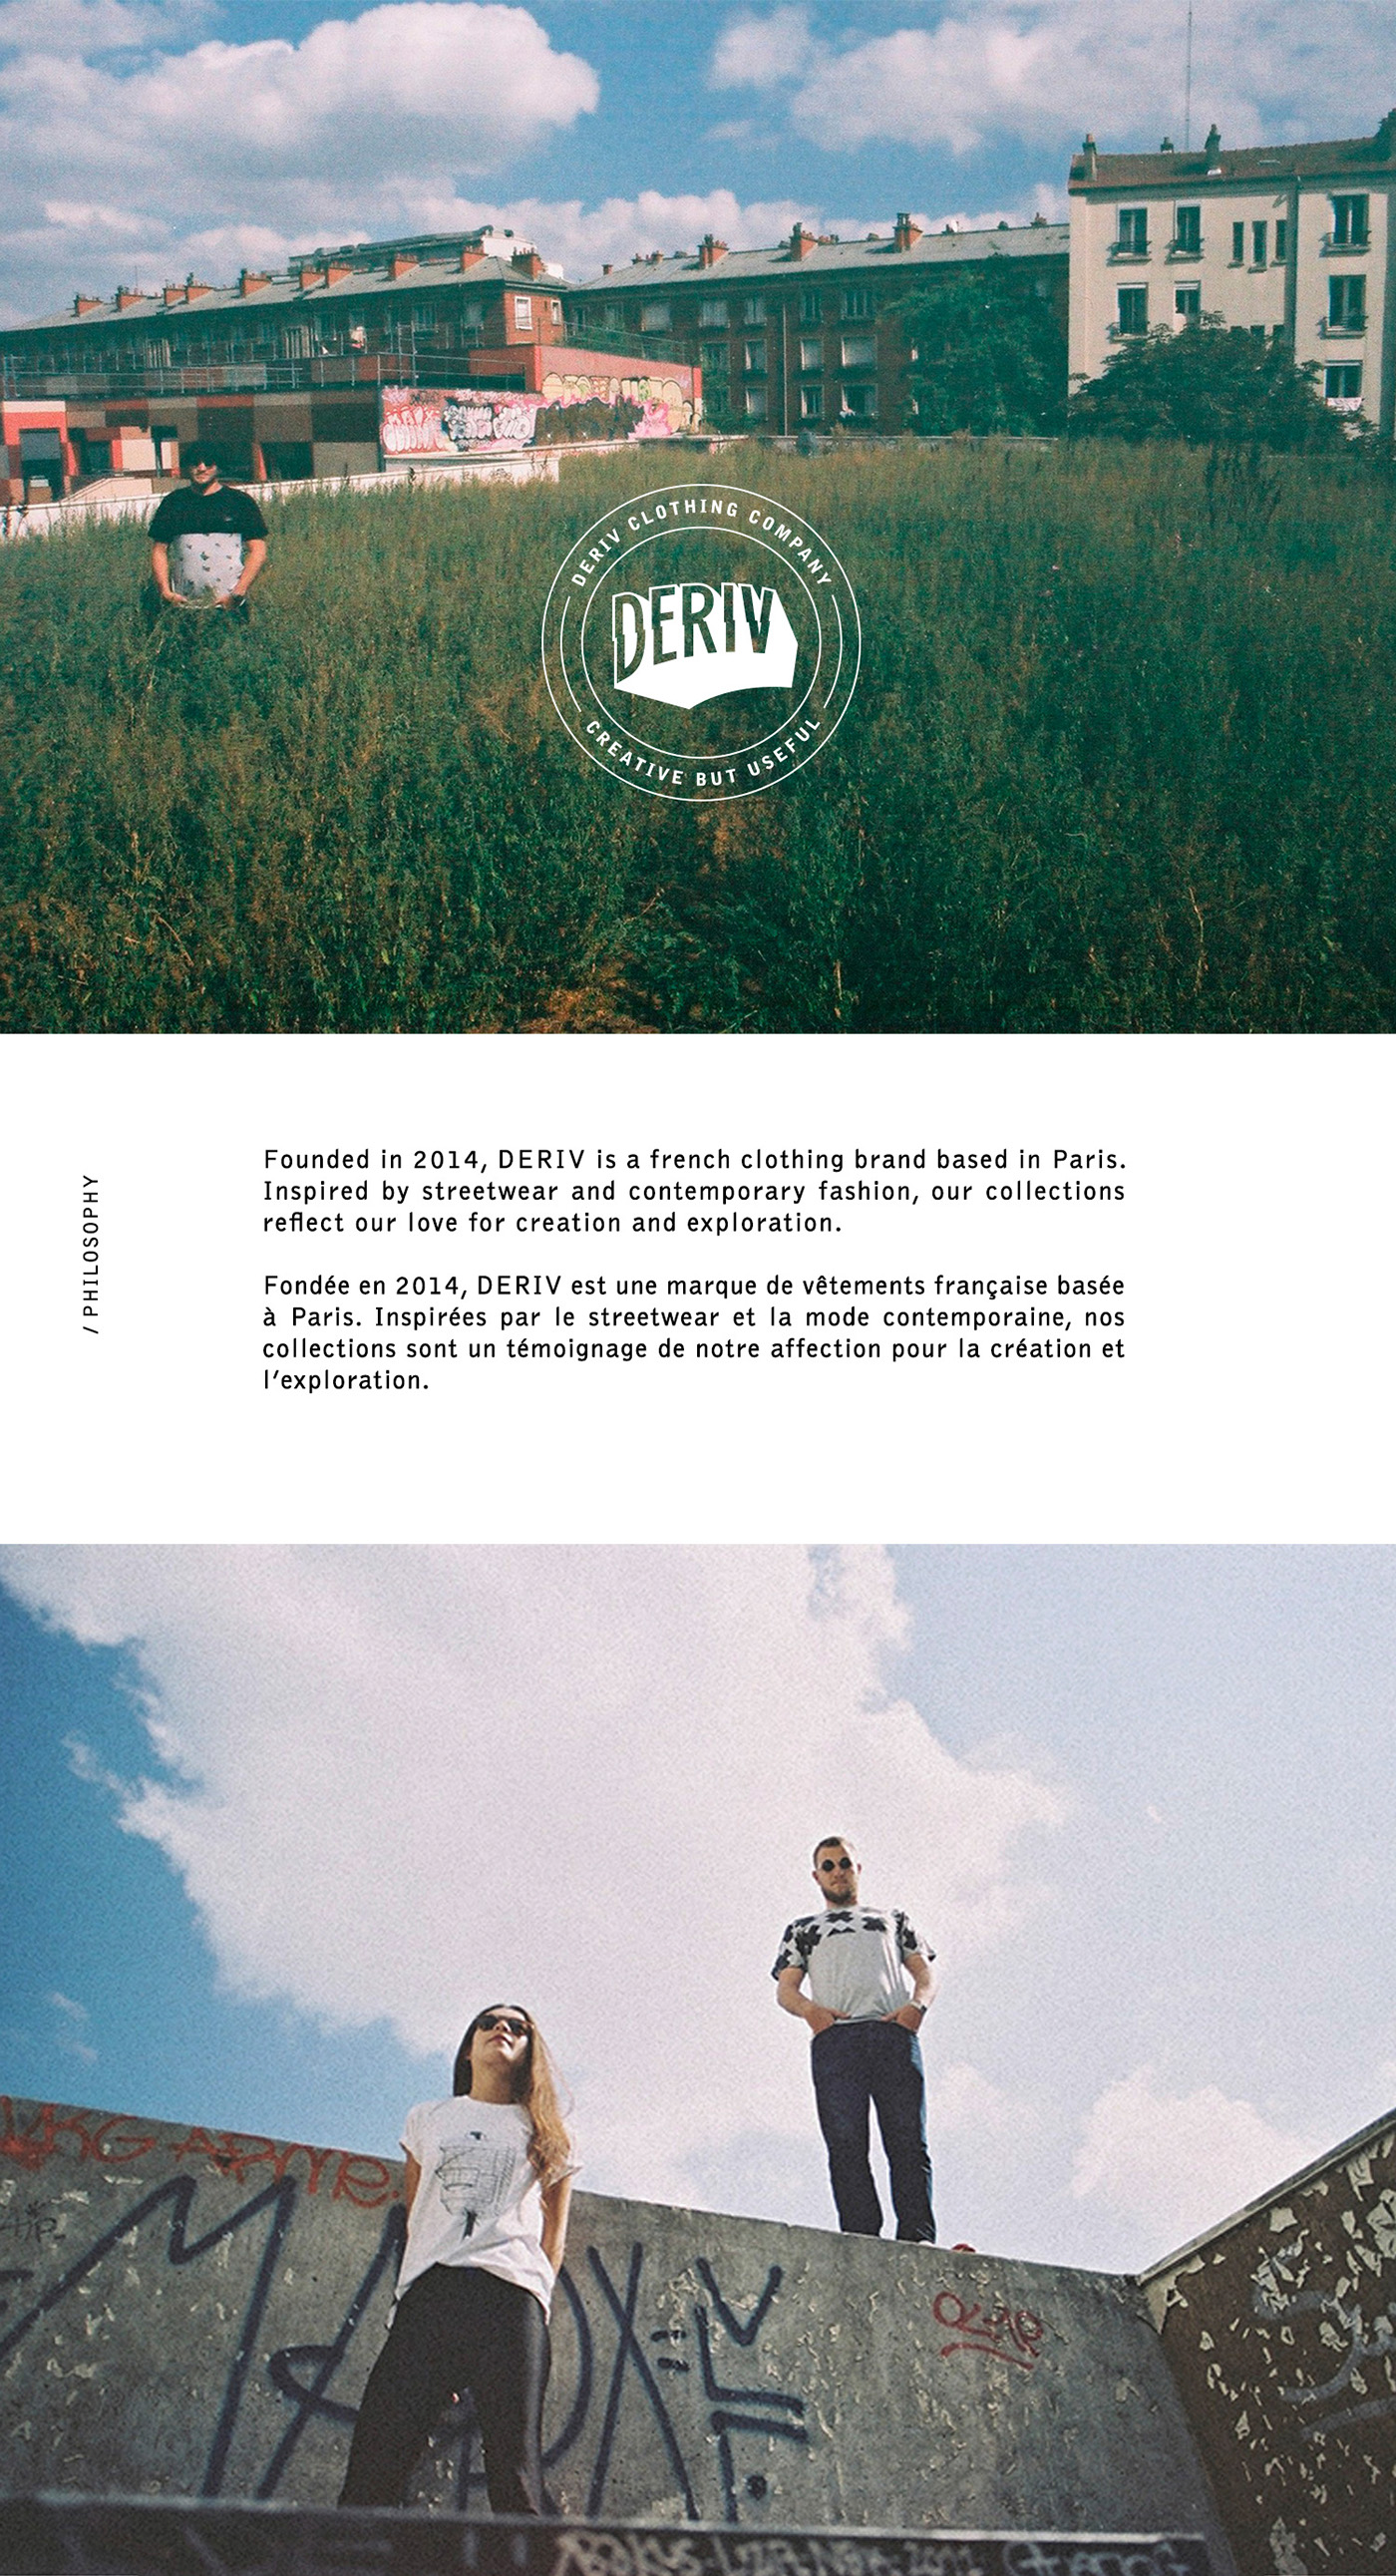 Deriv Clothing argentique direction artistique French brand clean minimalist modern photo 35mm